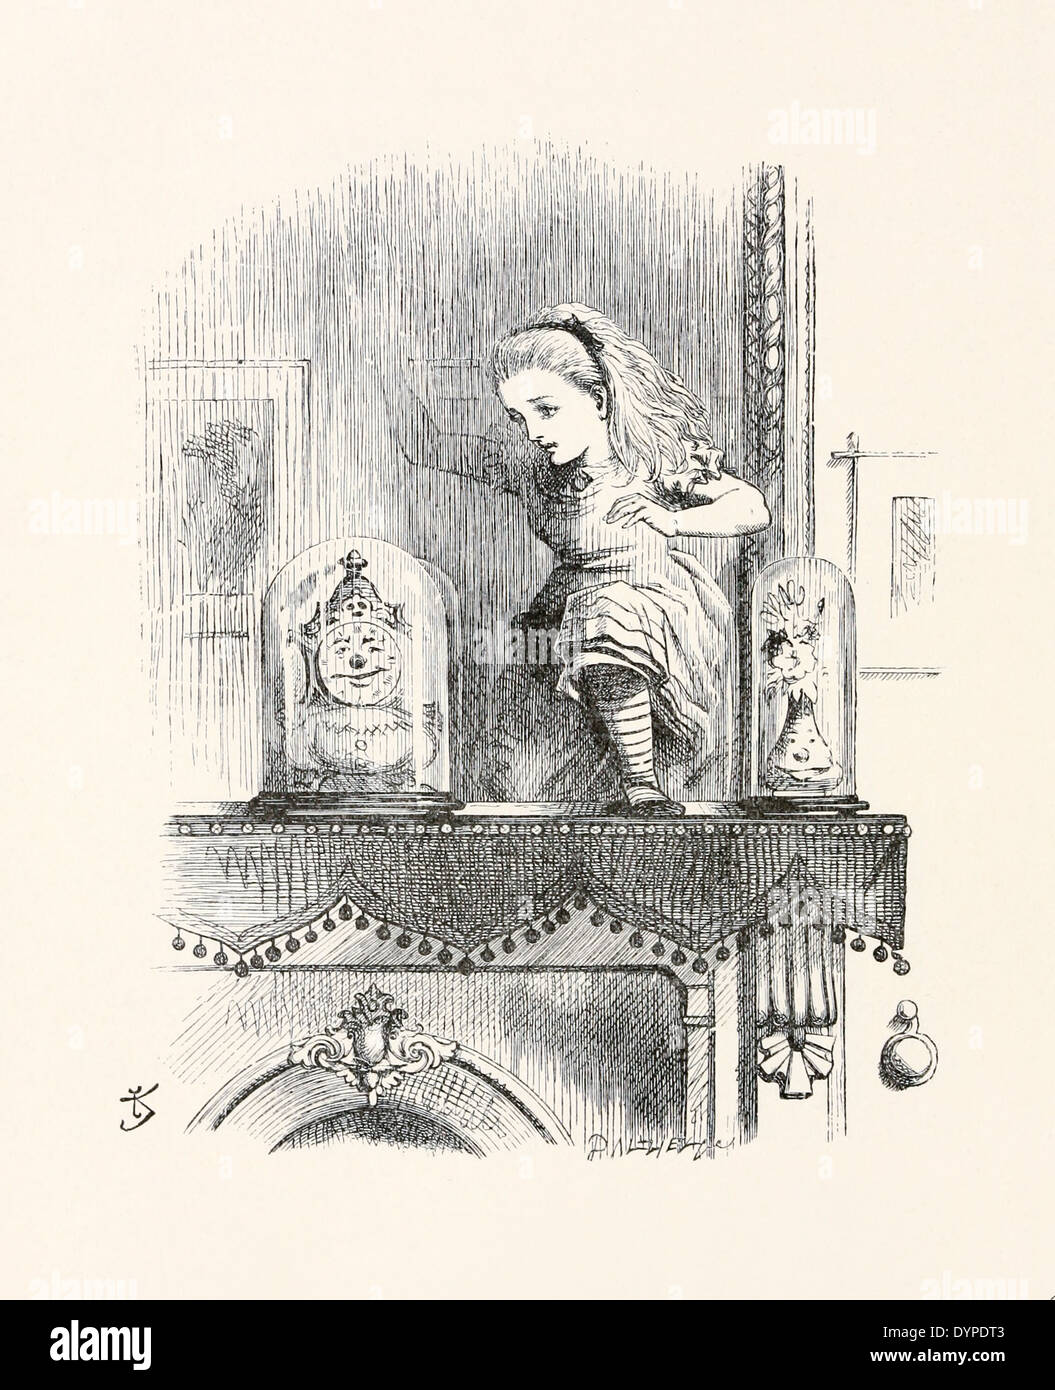 John Tenniel (1820-1914) illustrazione da Lewis Carrol "attraverso l'Looking-Glass" pubblicato nel 1871. Alice passa attraverso Foto Stock